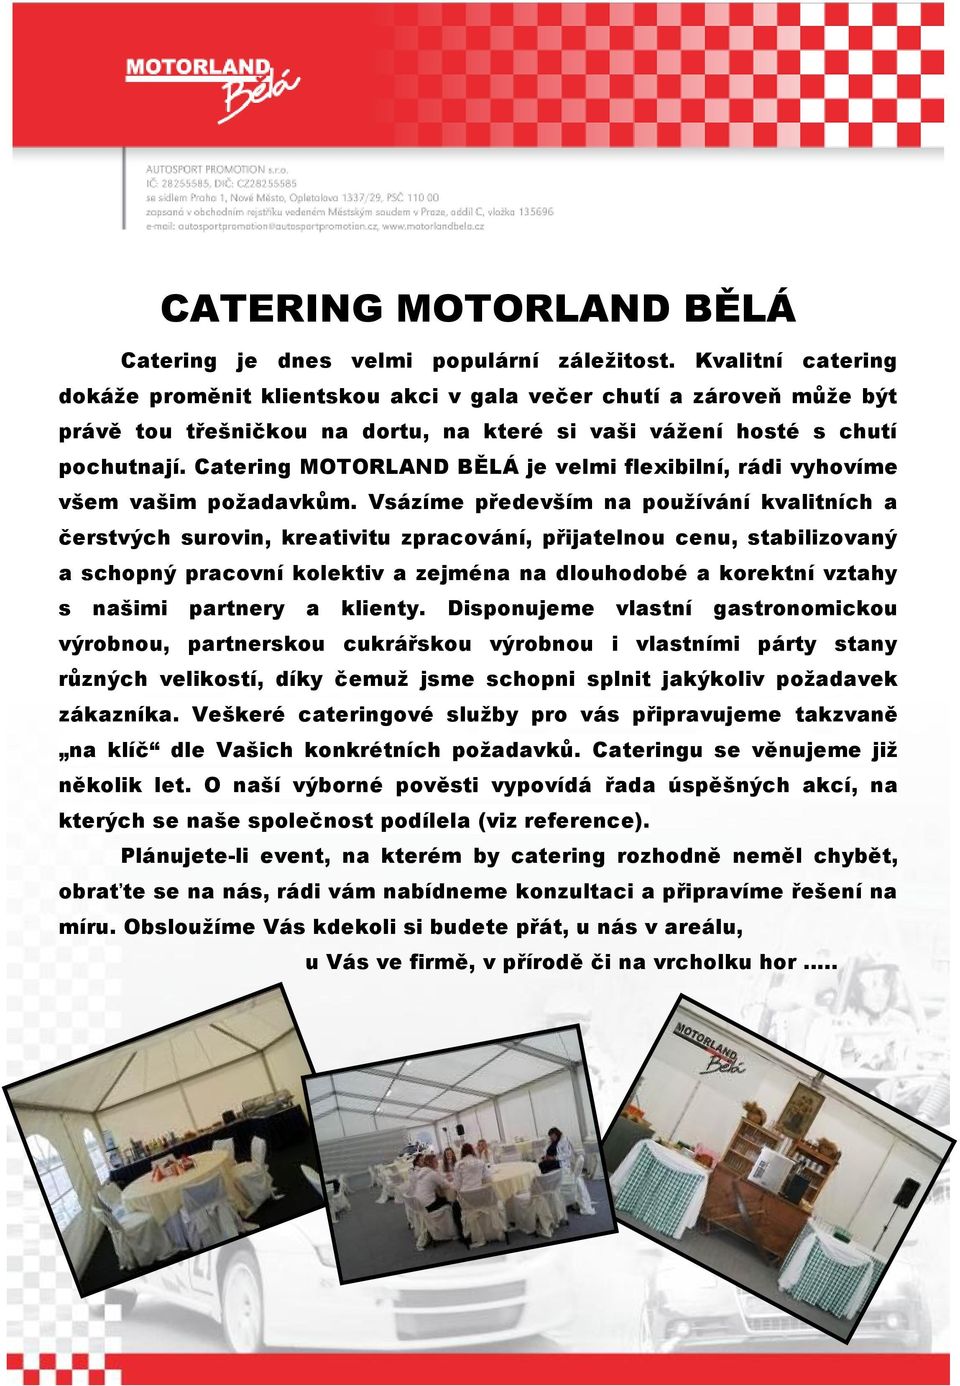 Catering MOTORLAND BĚLÁ je velmi flexibilní, rádi vyhovíme všem vašim požadavkům.